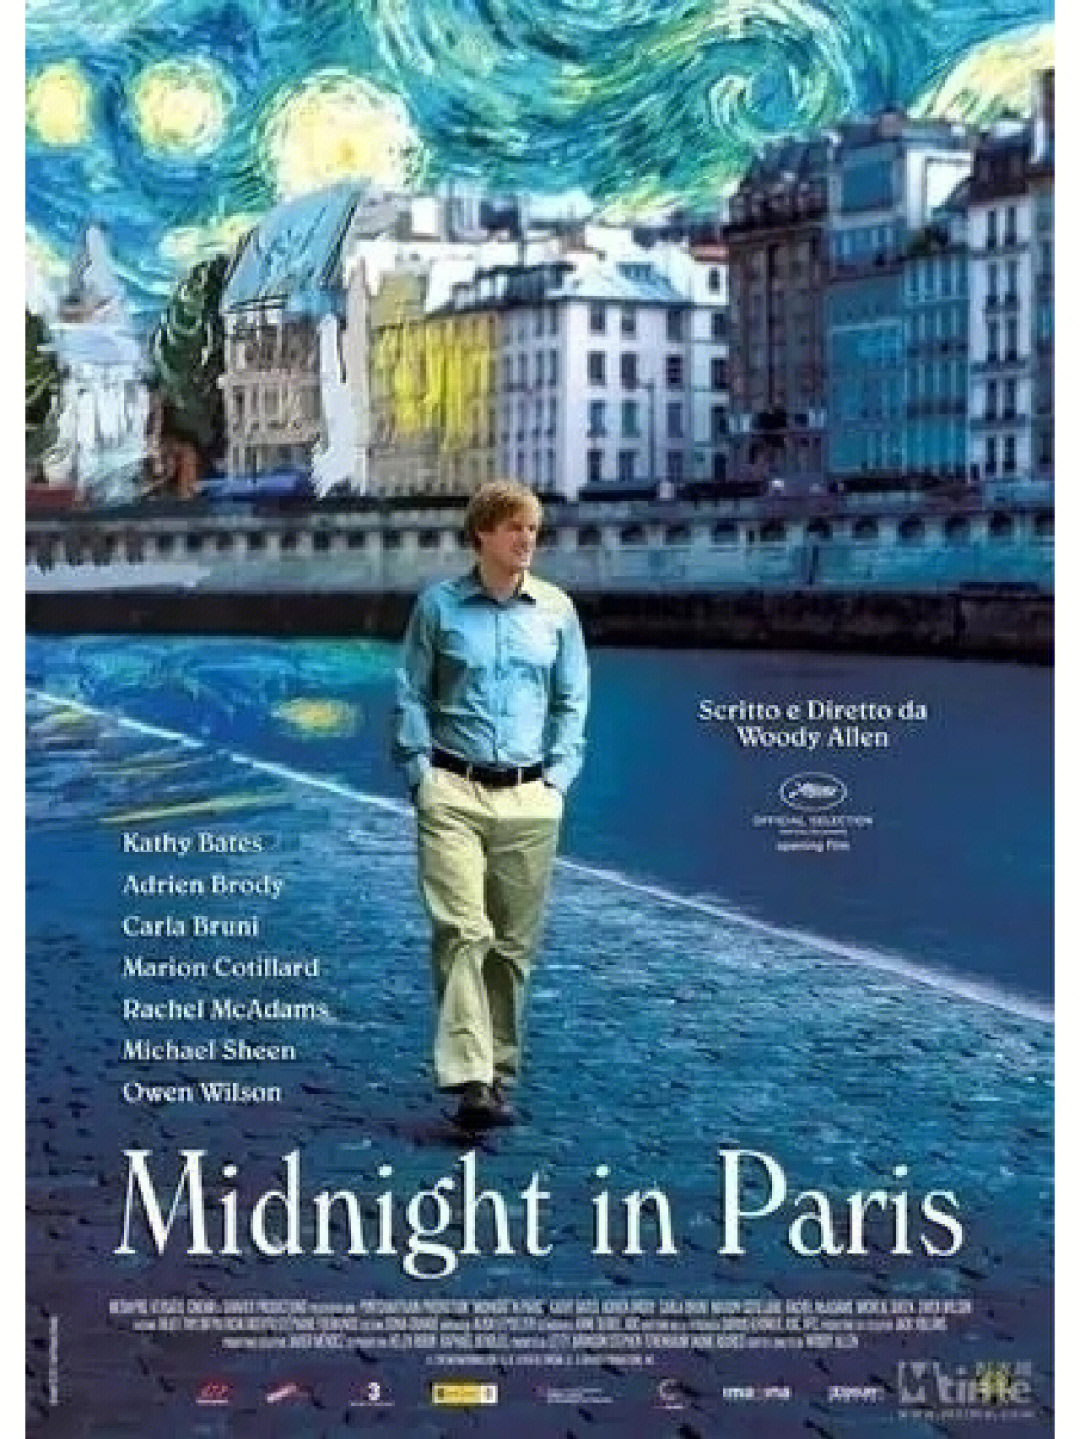 午夜巴黎外国穿越电影男主在午夜的巴黎意外搭上了回到过去的车认识了